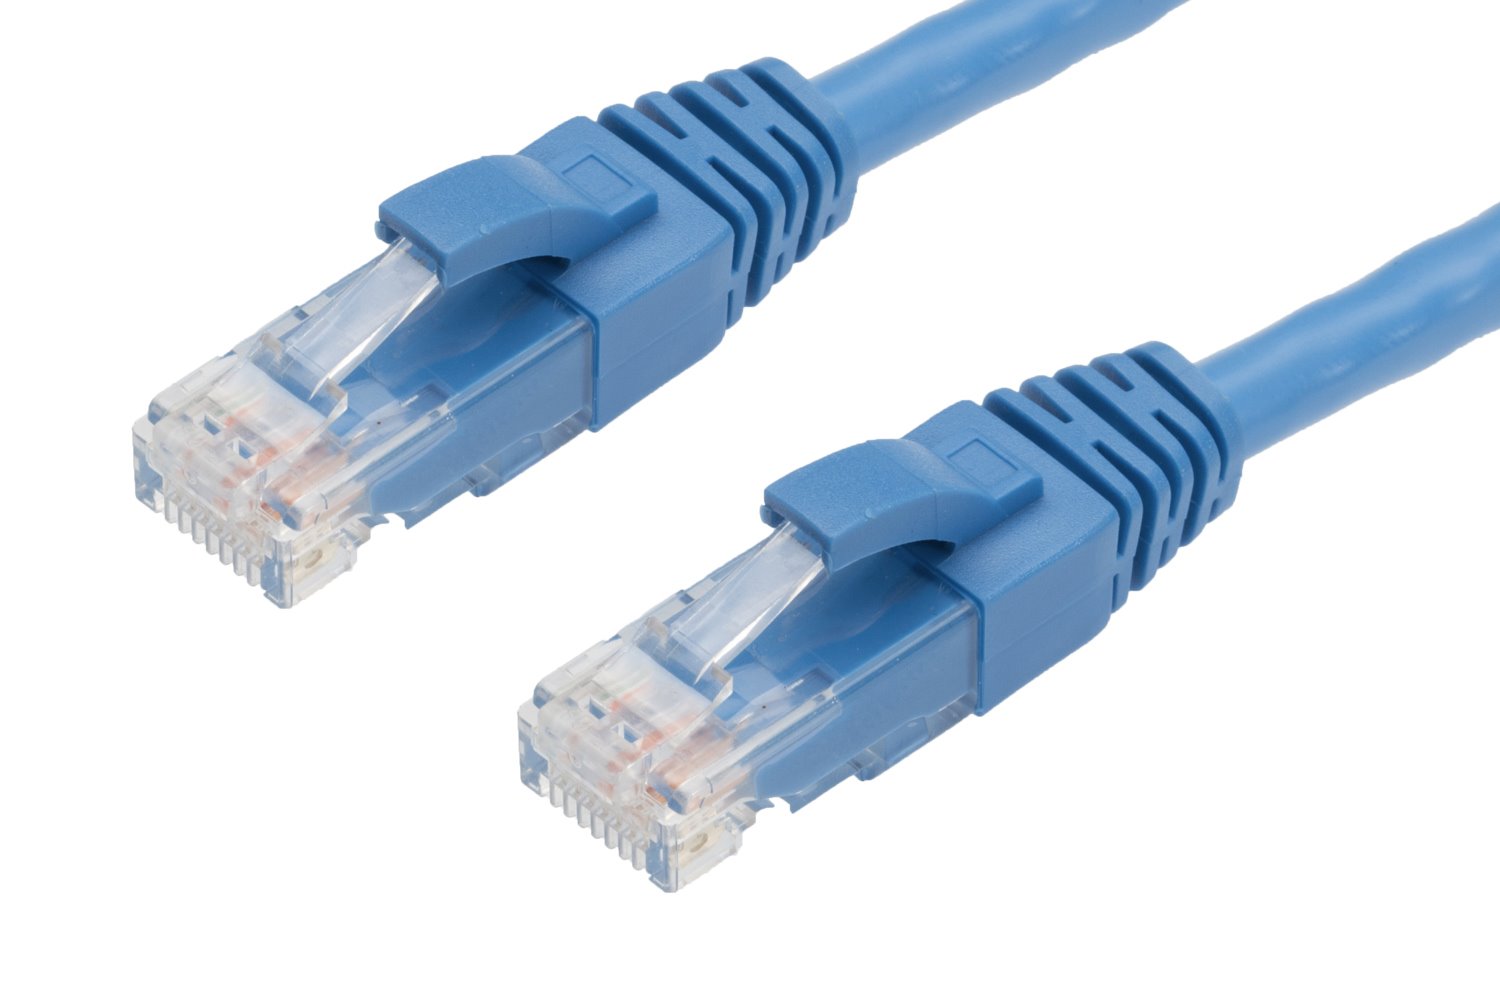 4Cabling 20M RJ45 Cat6 Ethernet Cable. Blue